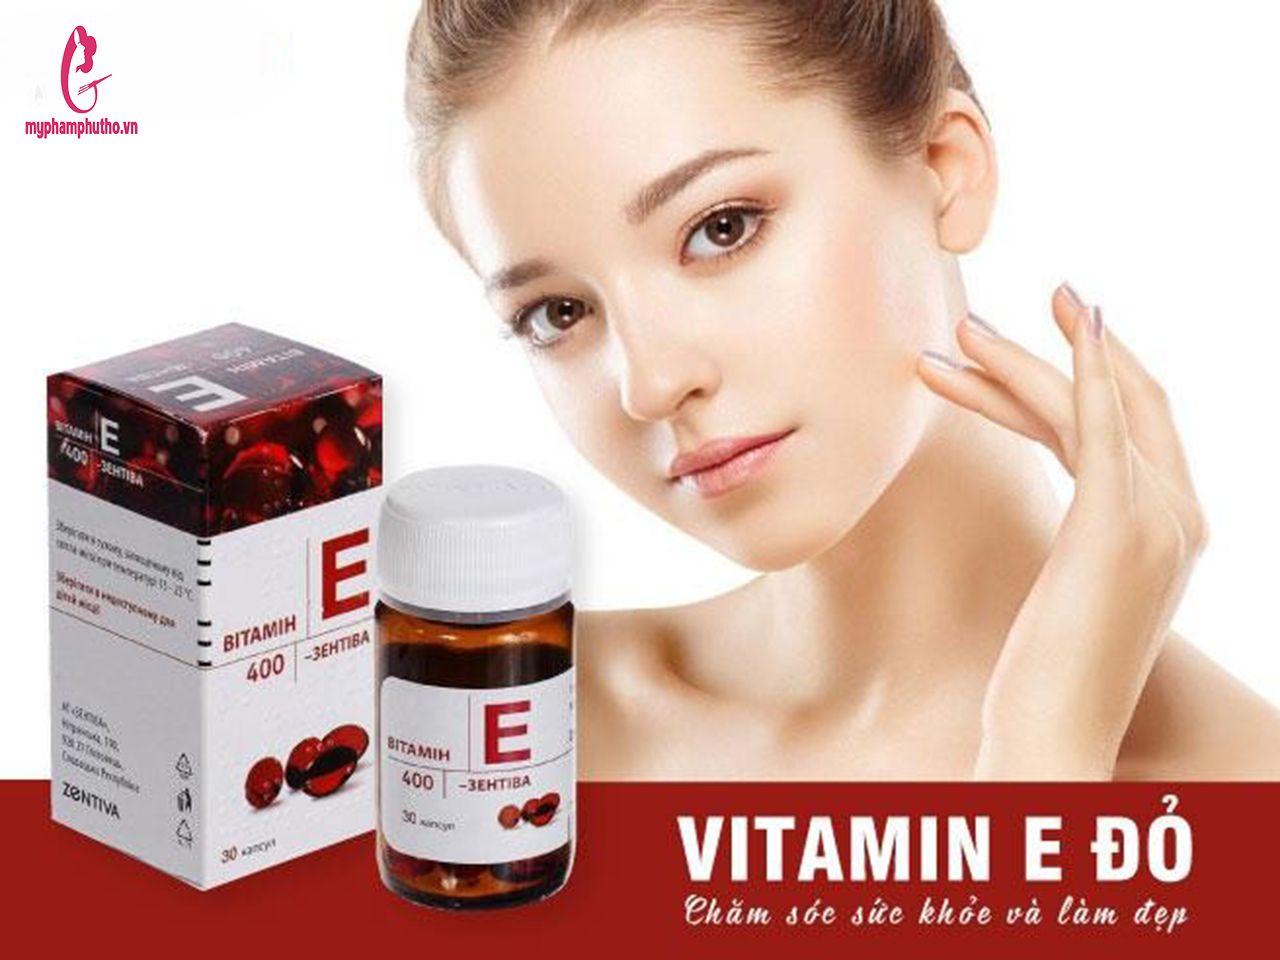 Viên uống Vitamin E đỏ Zentiva 400mg - 30 viên chính hãng Nga –  myphamphutho.vn